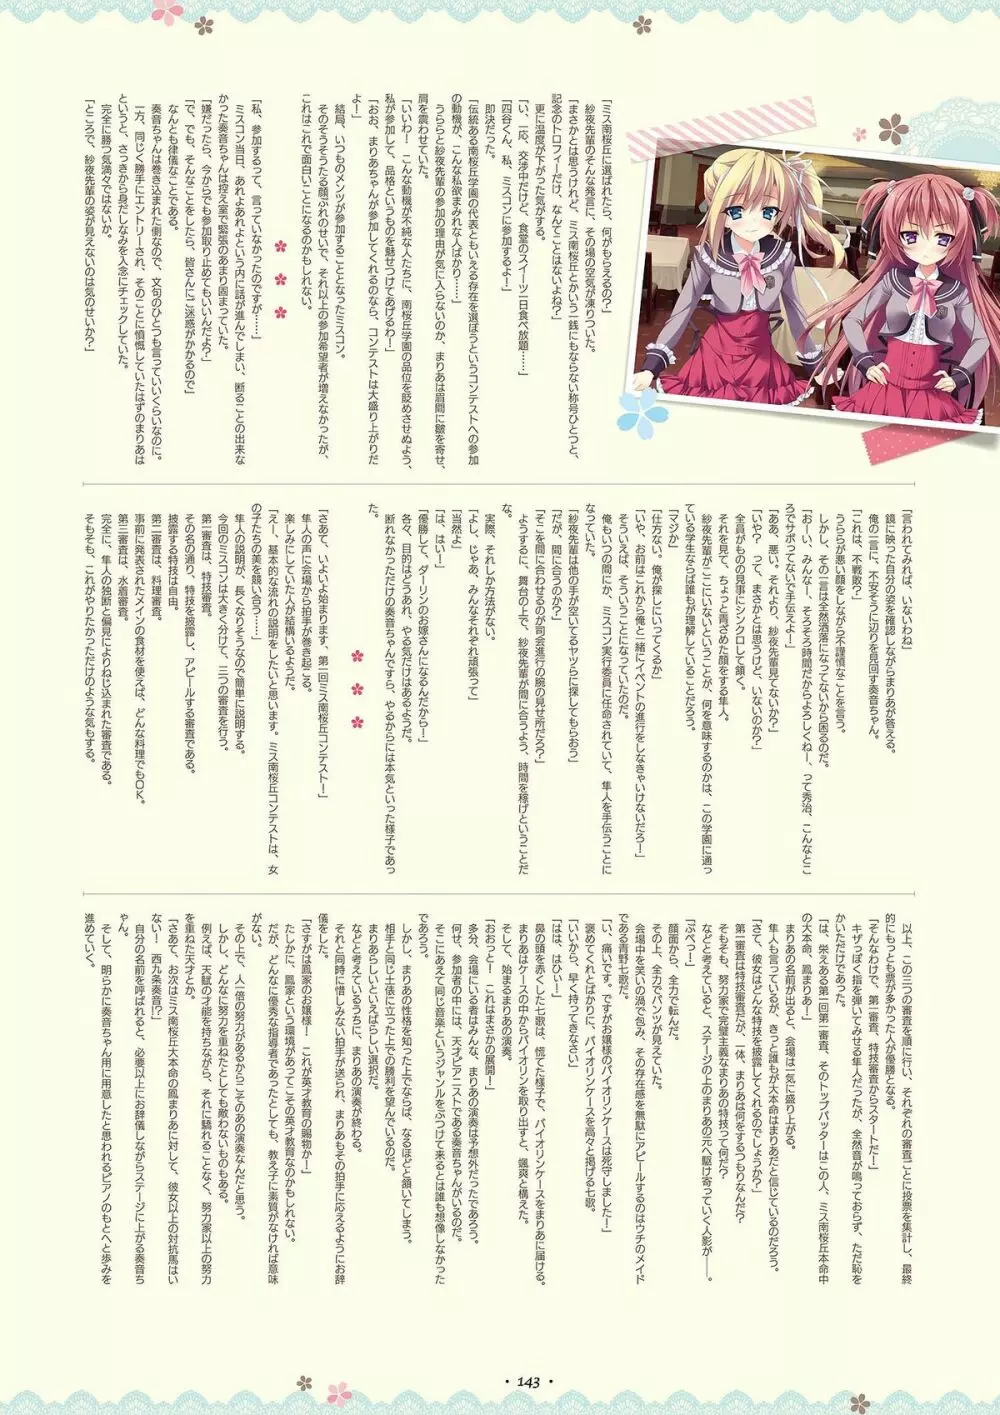 祝福の鐘の音は、桜色の風と共に ビジュアルファンブック 141ページ